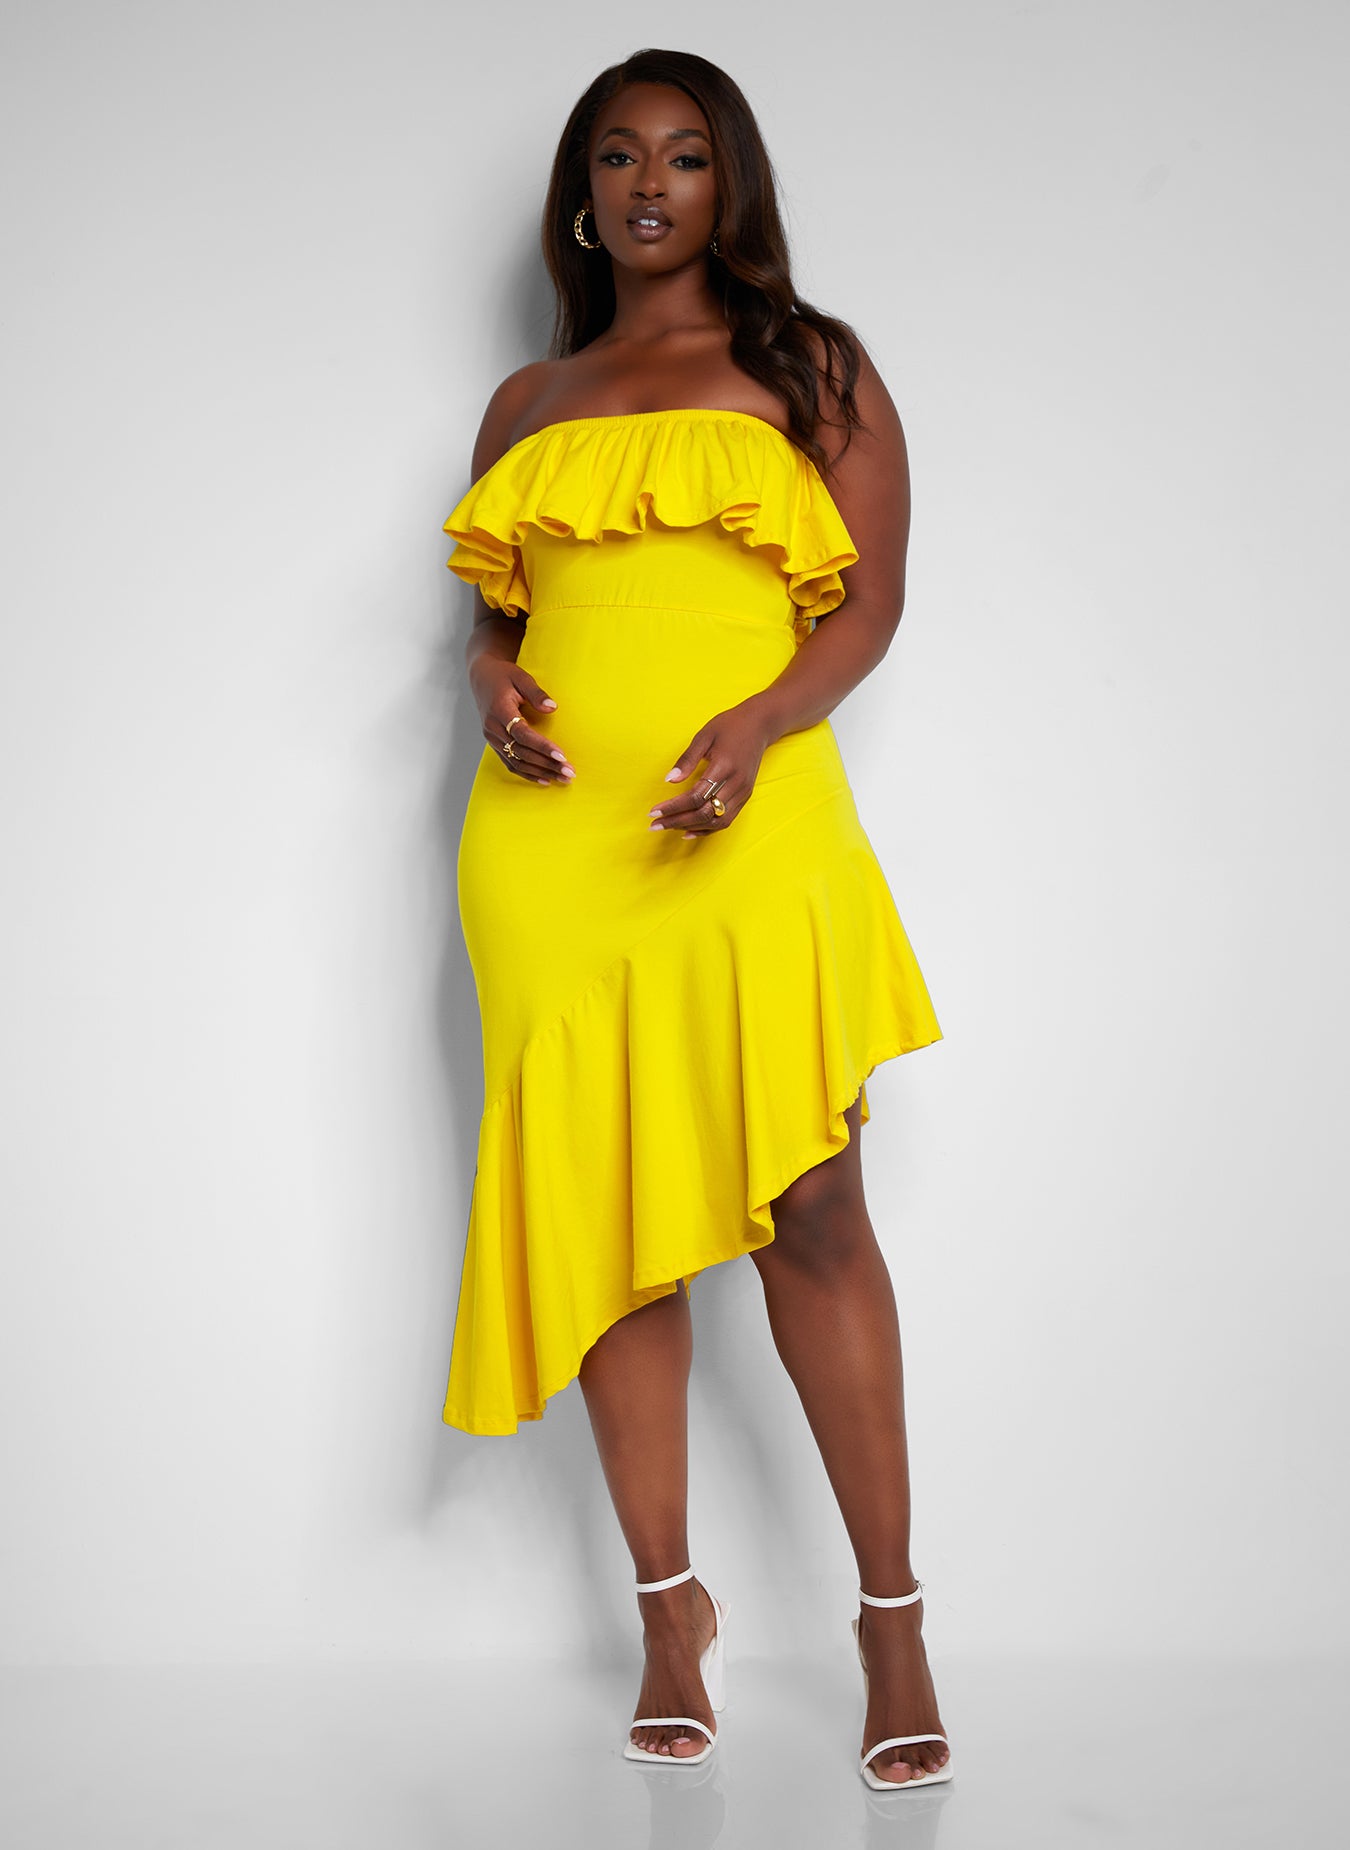 Ray of Sunshine Ruffled Sleeveless Dress - Yellow